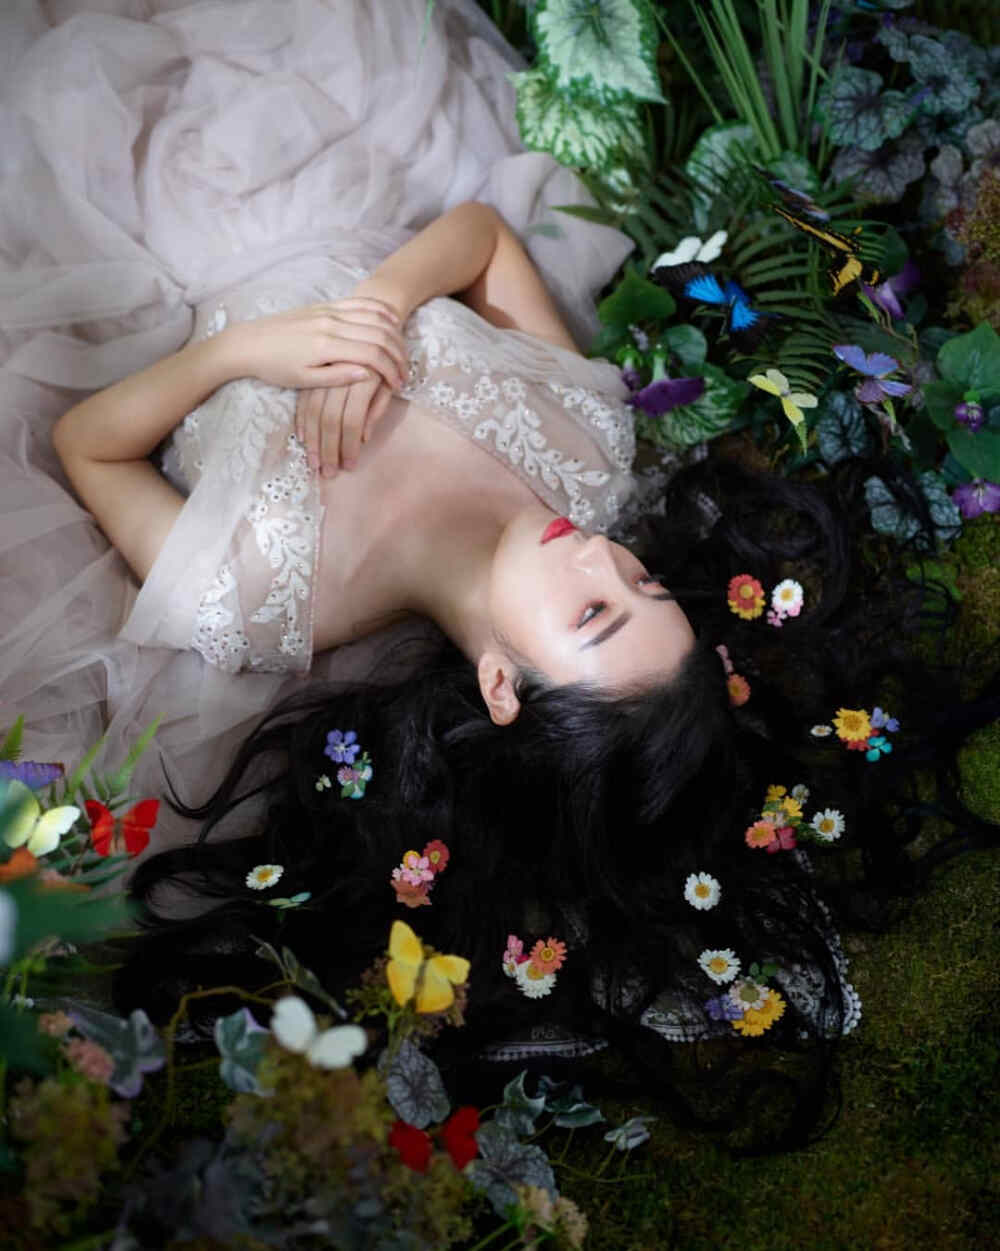 在未曾实现的梦境里
培育着无法绽放的花
摄影作品集
韩国摄影师作品